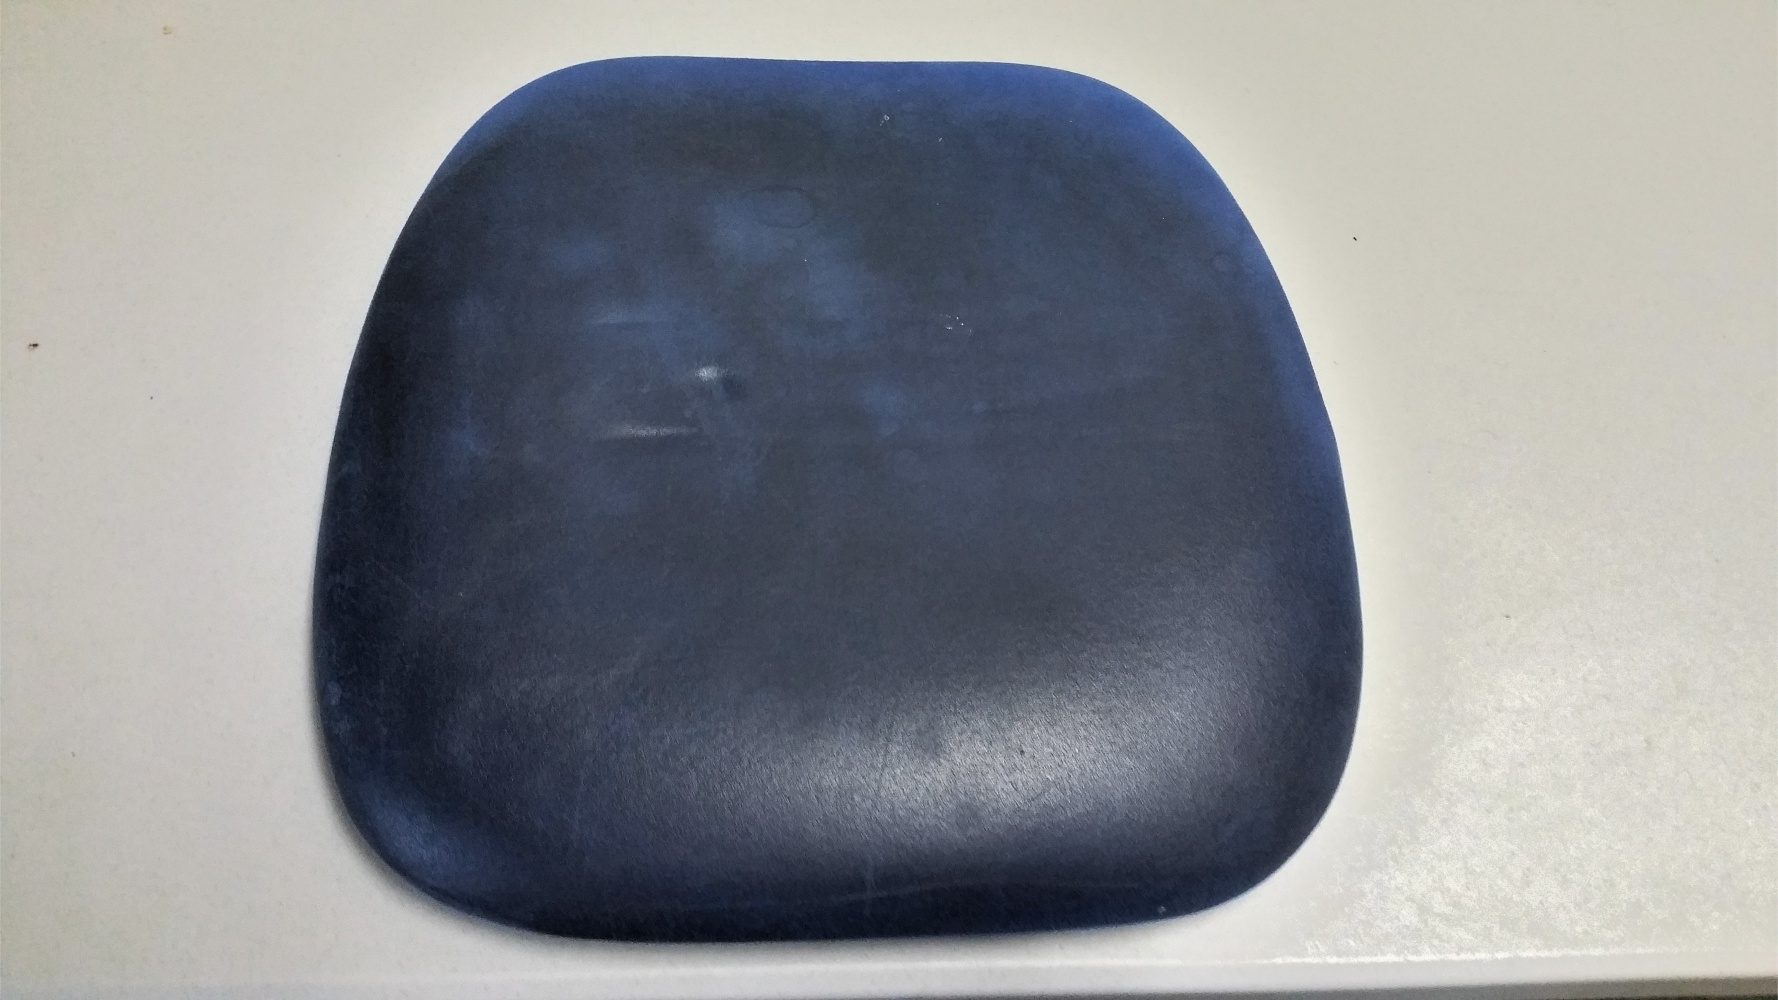 Hier sehen Sie eine demontierte Sitzfläche eines Stuhls. Ob blau wirklich die Grundfarbe war? Wer weiß? Für uns galt diese extreme Grundverschmutzug zu beseitigen.